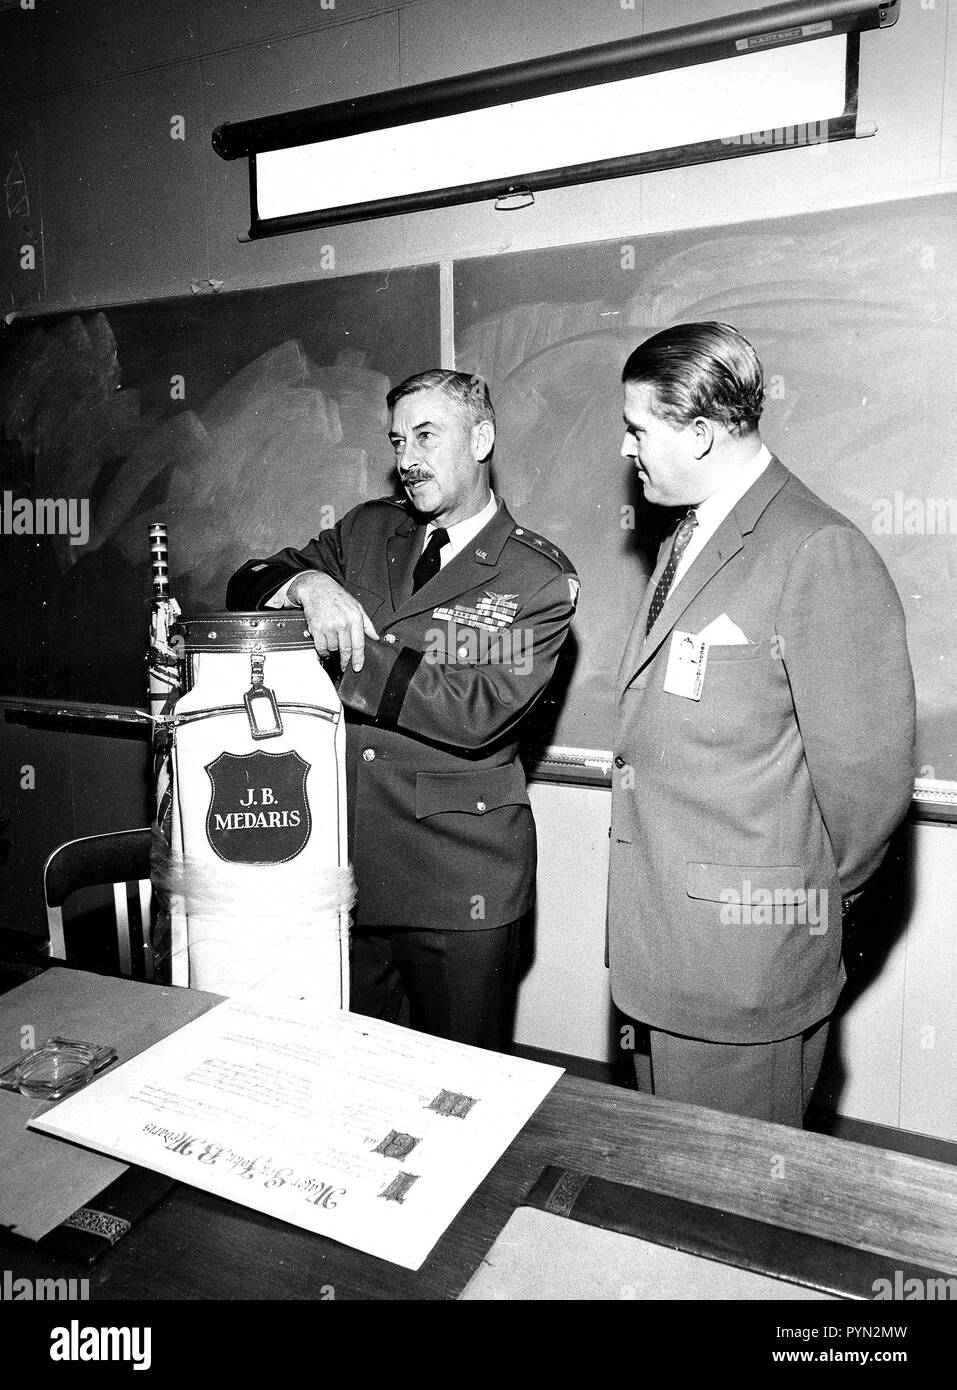 Marshall Space Flight Center Director Wernher von Braun präsentiert Allgemeine J.B. Medaris mit einem neuen Golf Bag. General Medaris, (links) war ein Befehlshaber der Army Ballistic Missile Agency (ABMA) in Redstone Arsenal, Alabama während 1955 bis 1958. Stockfoto